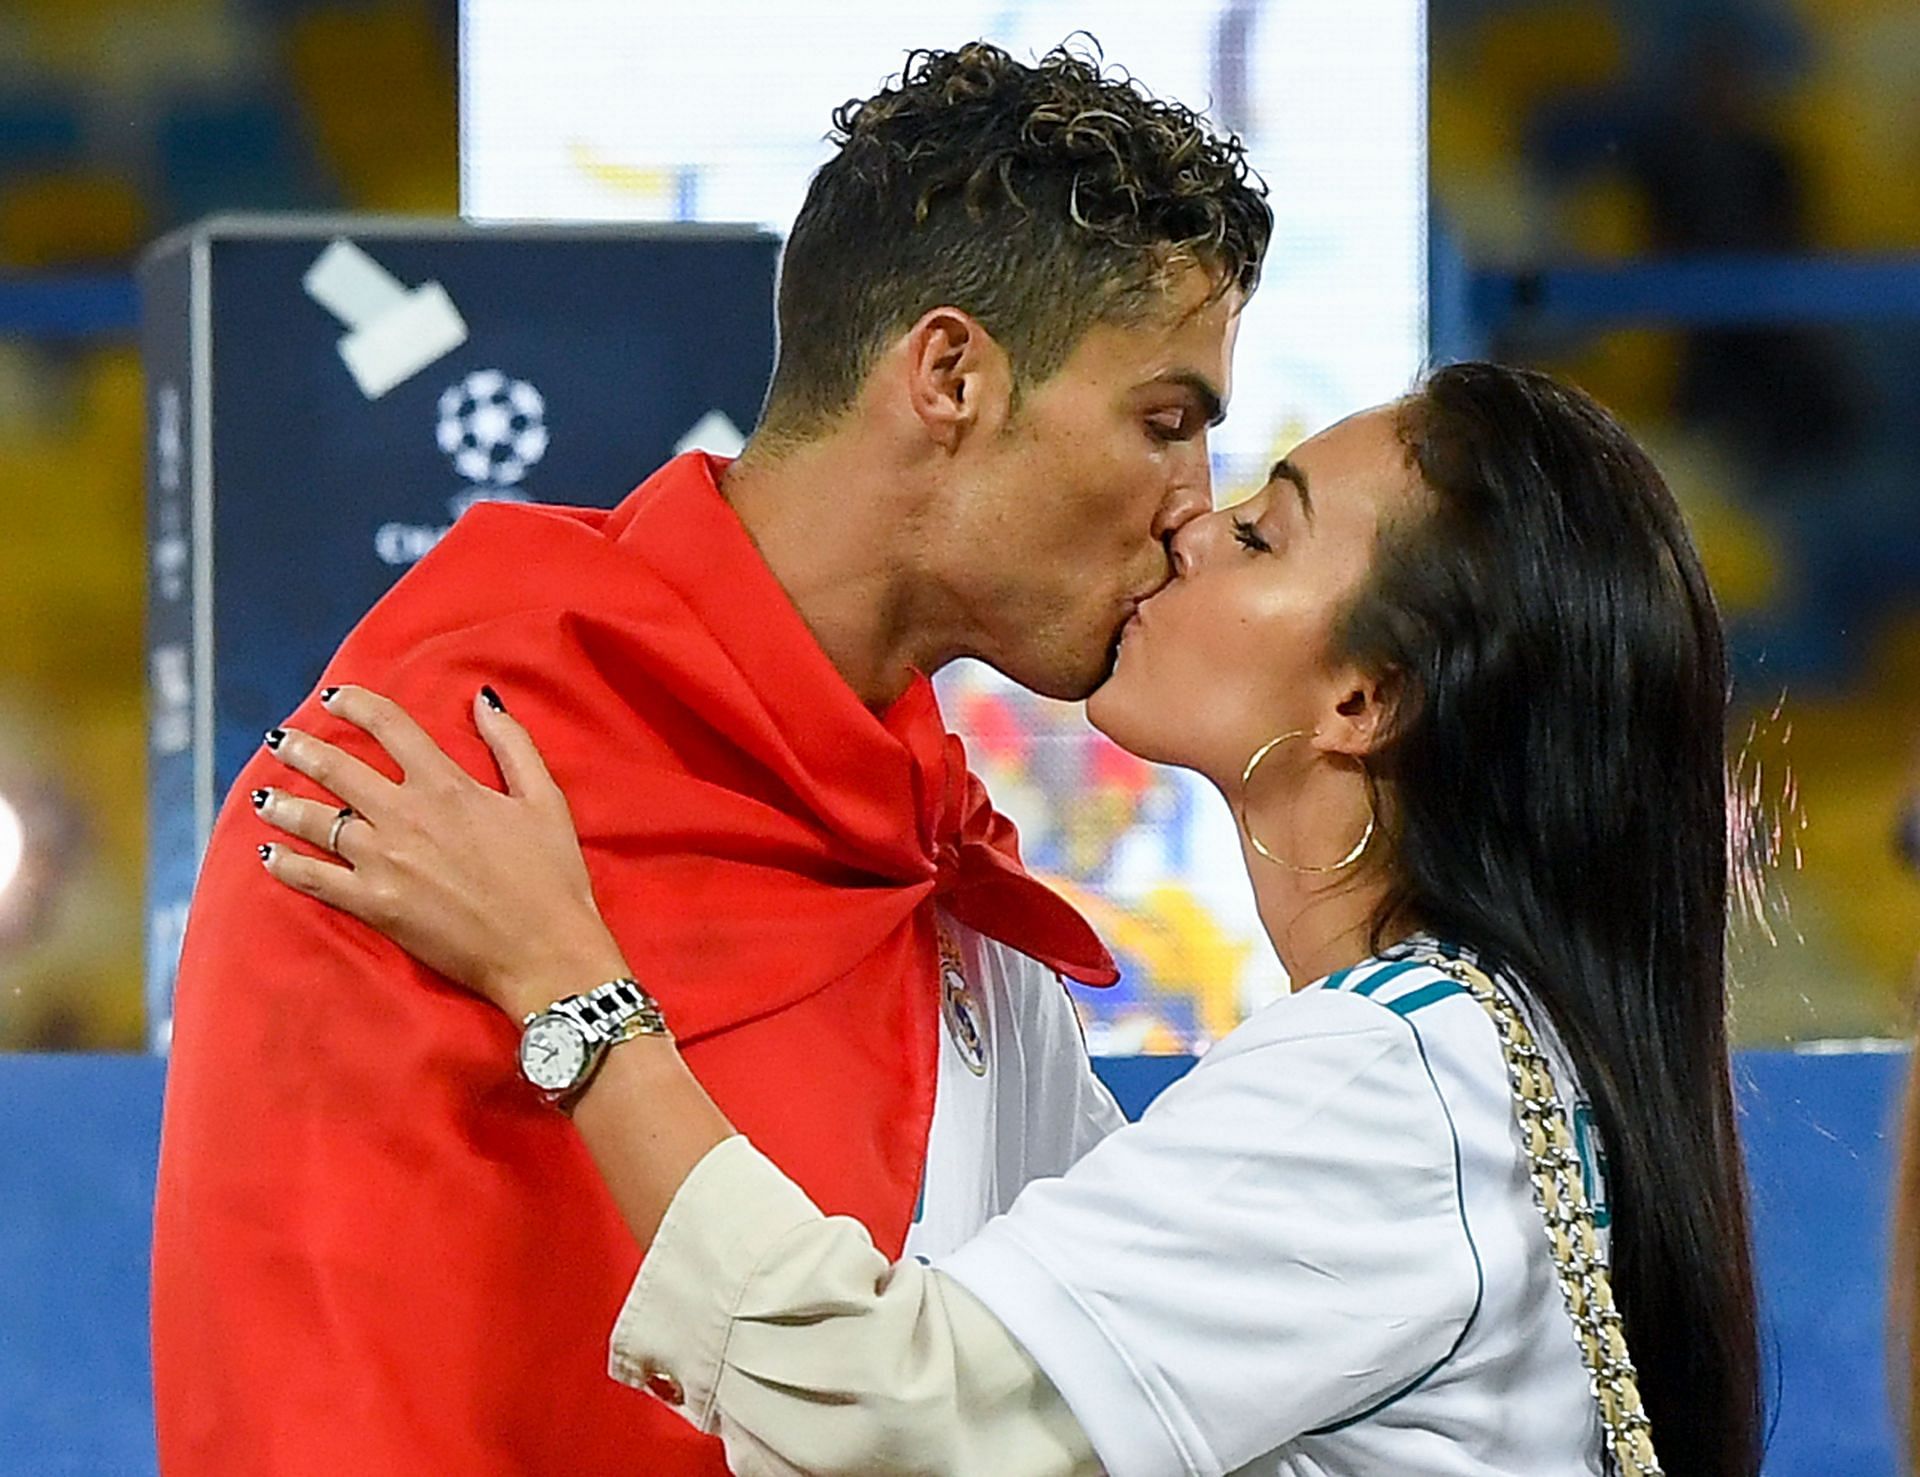 Cristiano Ronaldo and Georgina Rodriguez (via Getty Images)